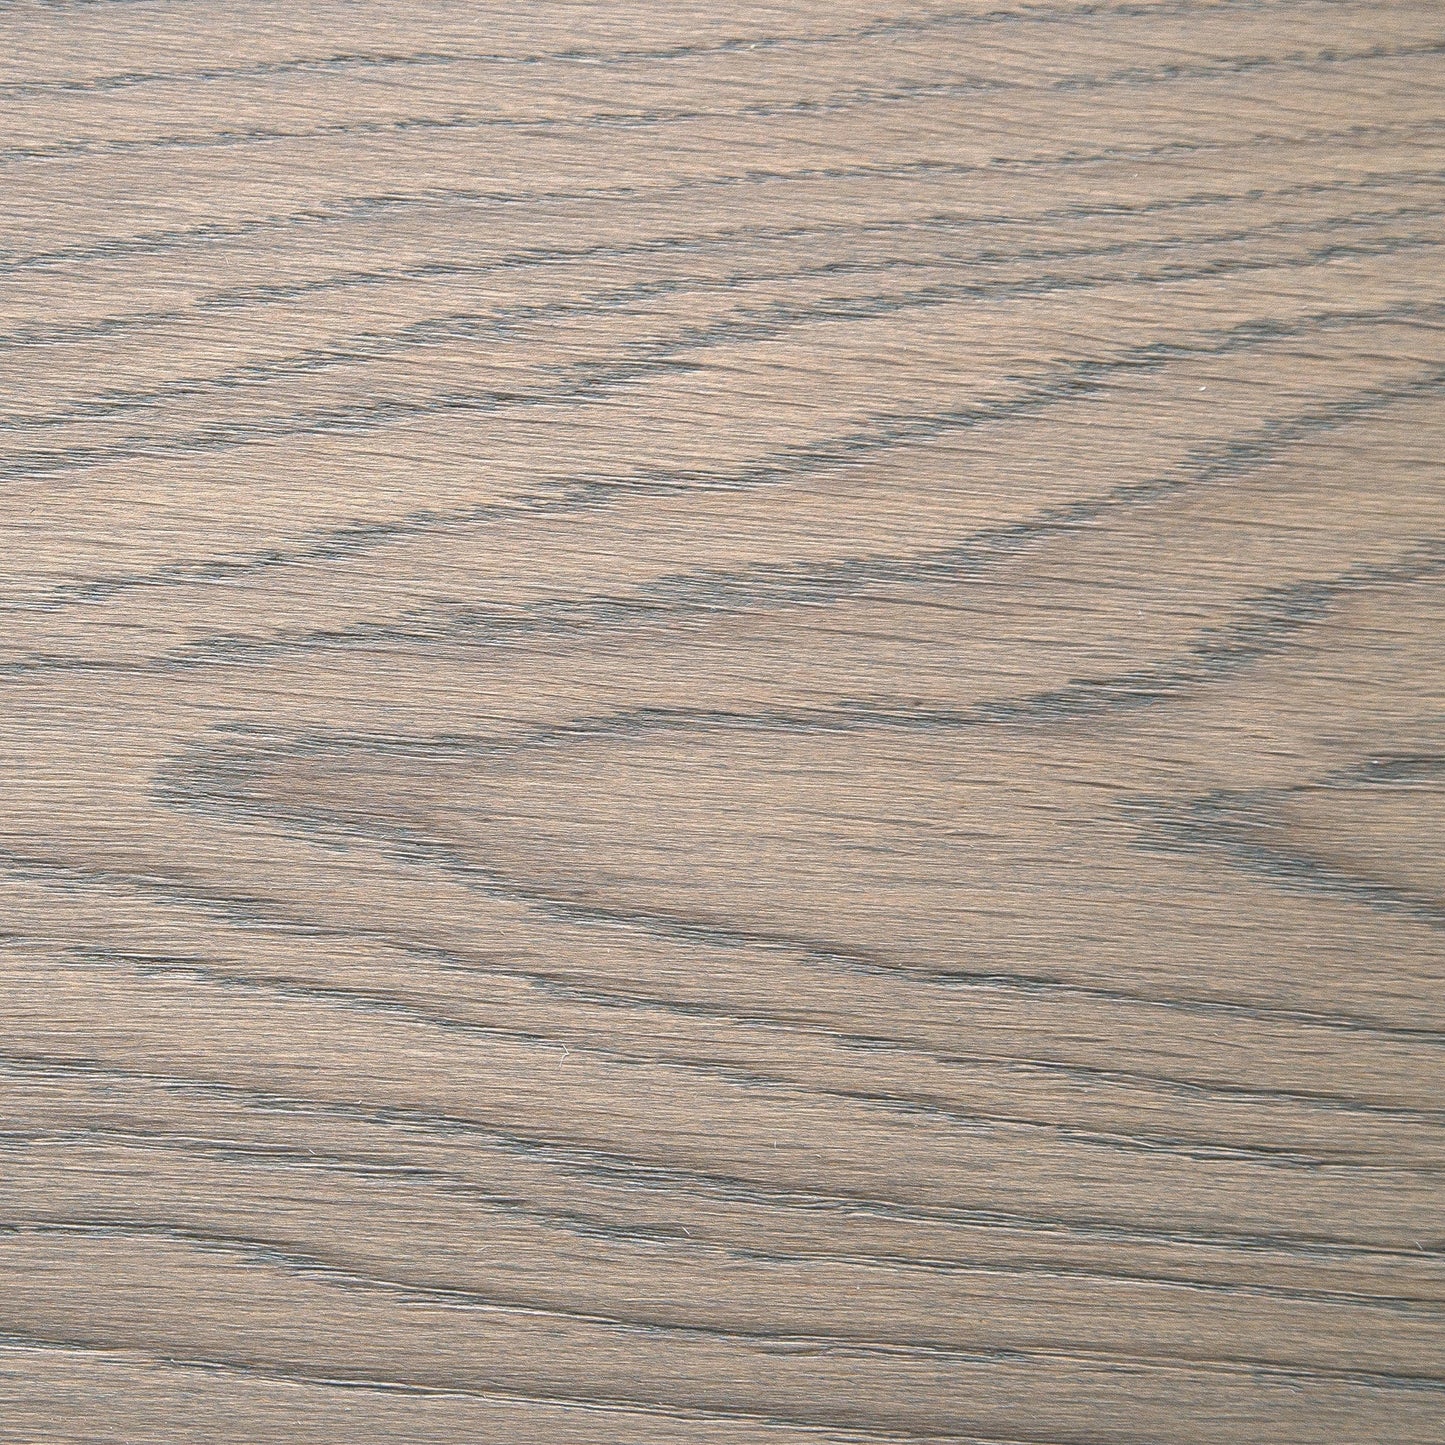 Pavimenti in legno Rovere Landlord, GRANDE, pietra grigia oliata - calma